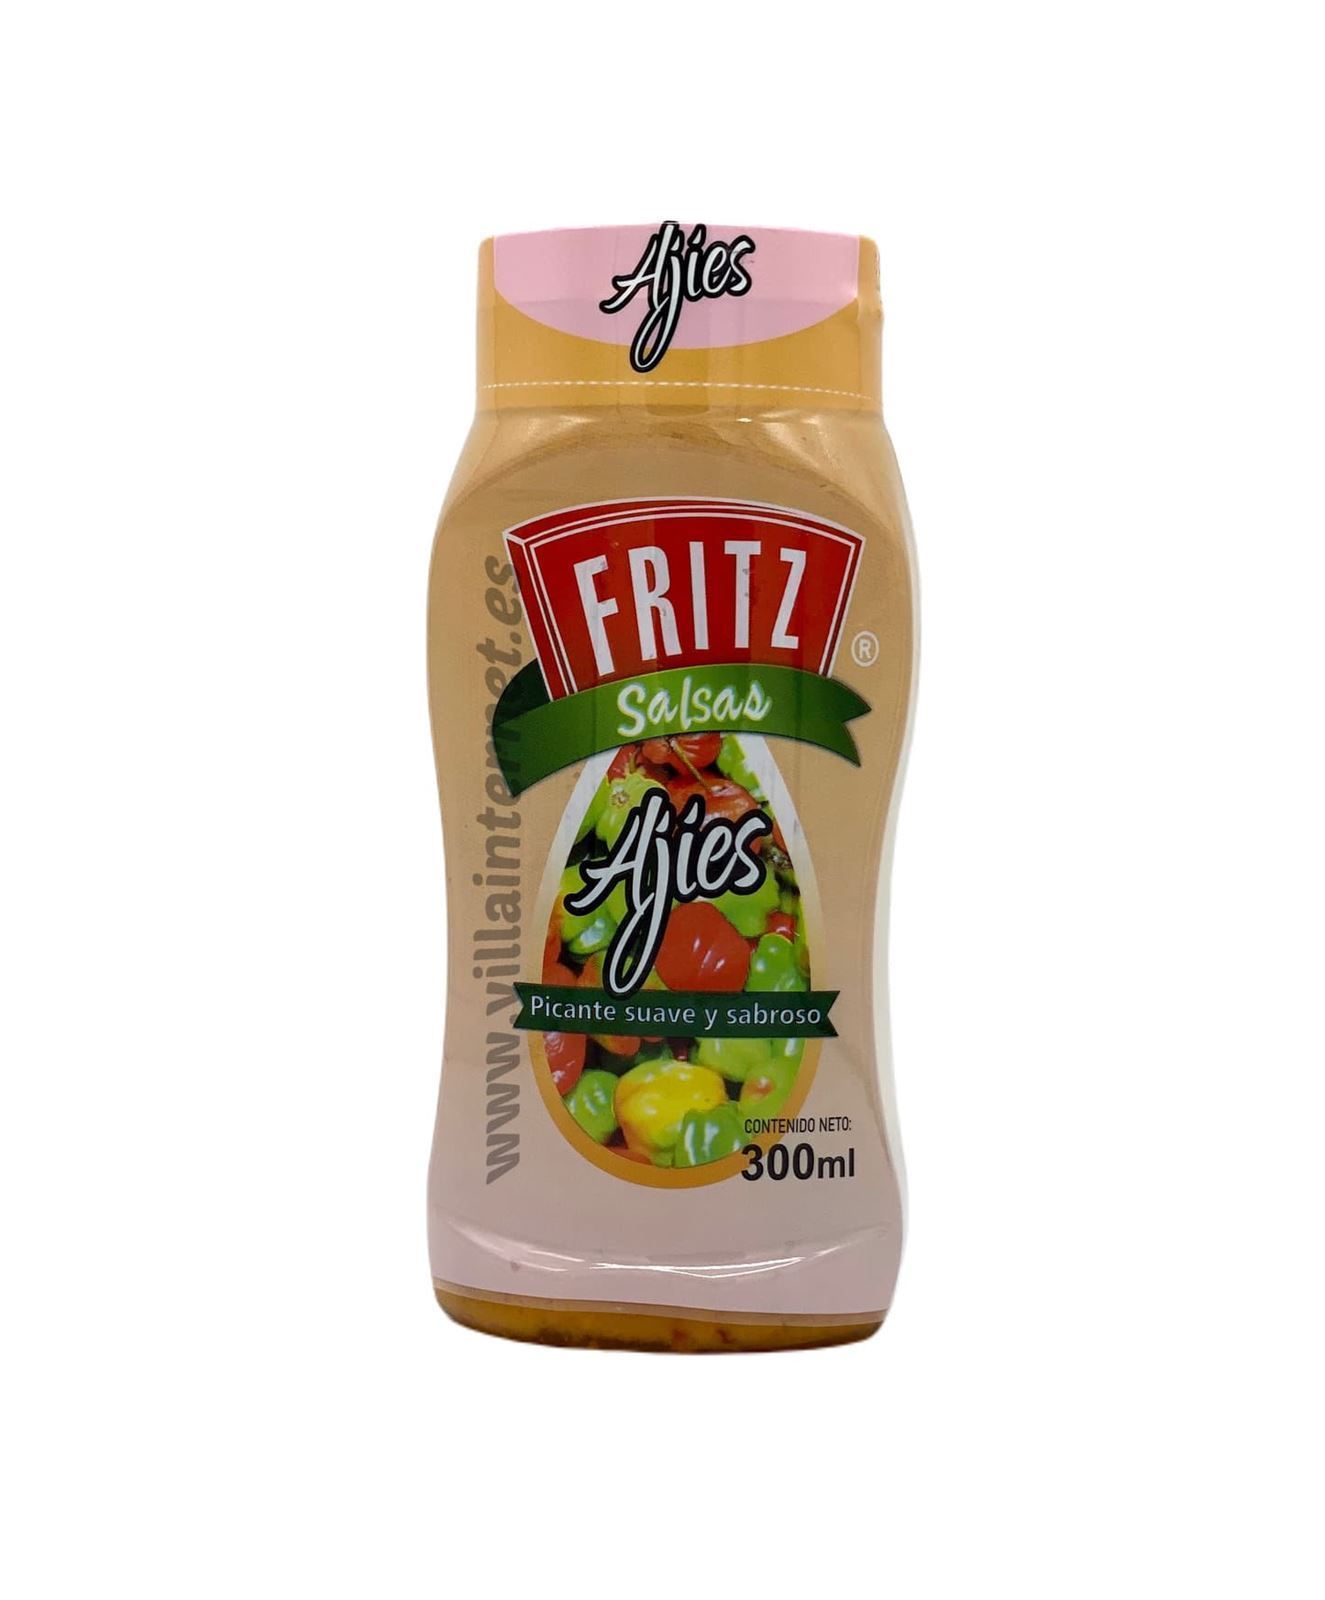 Salsa Fritz sabor ajíes 300ml - Imagen 1